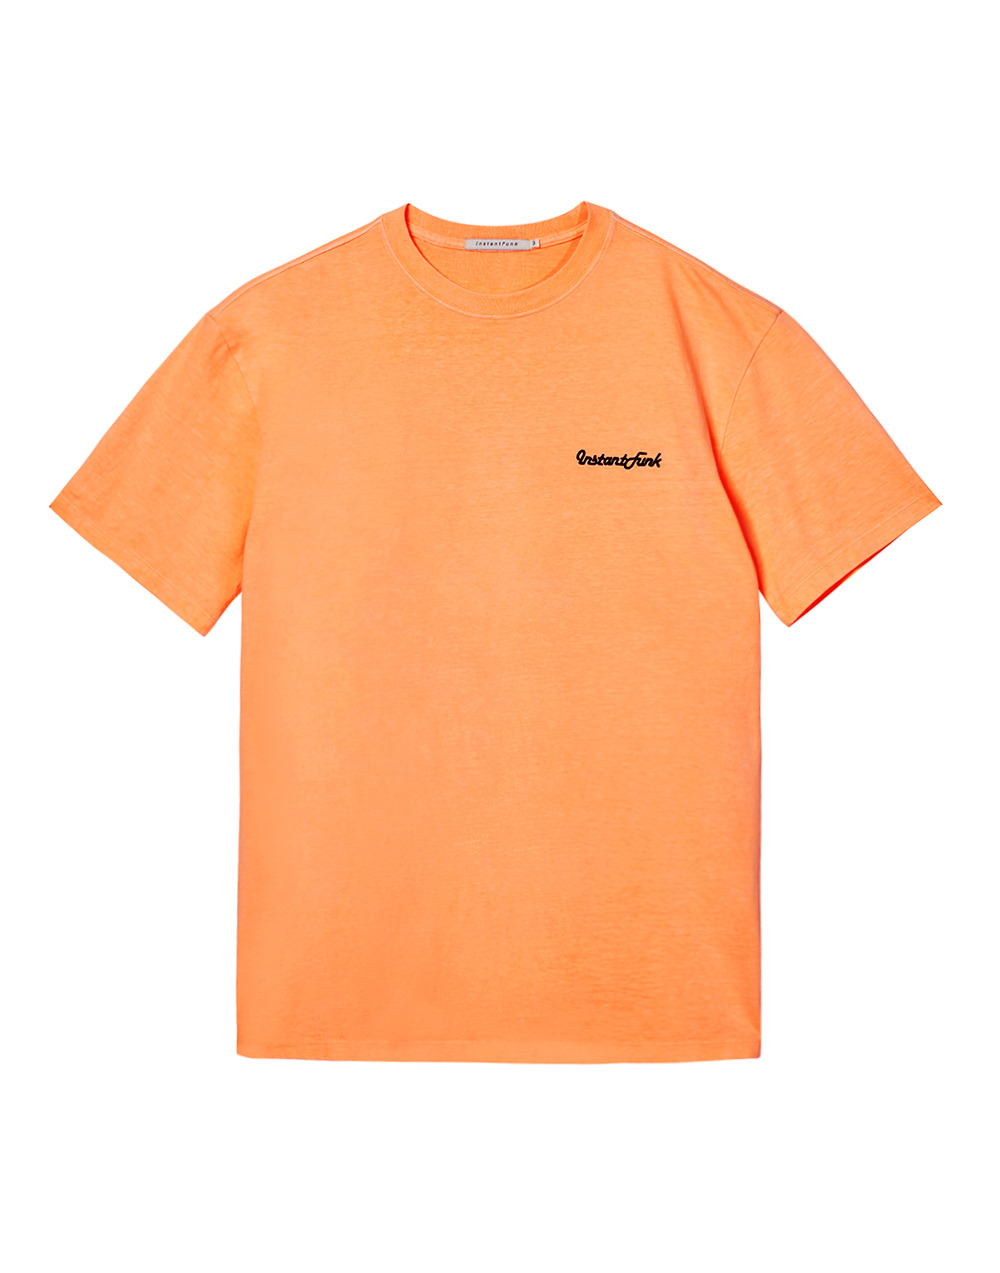 네온 피그먼트다잉 티셔츠 - 오렌지